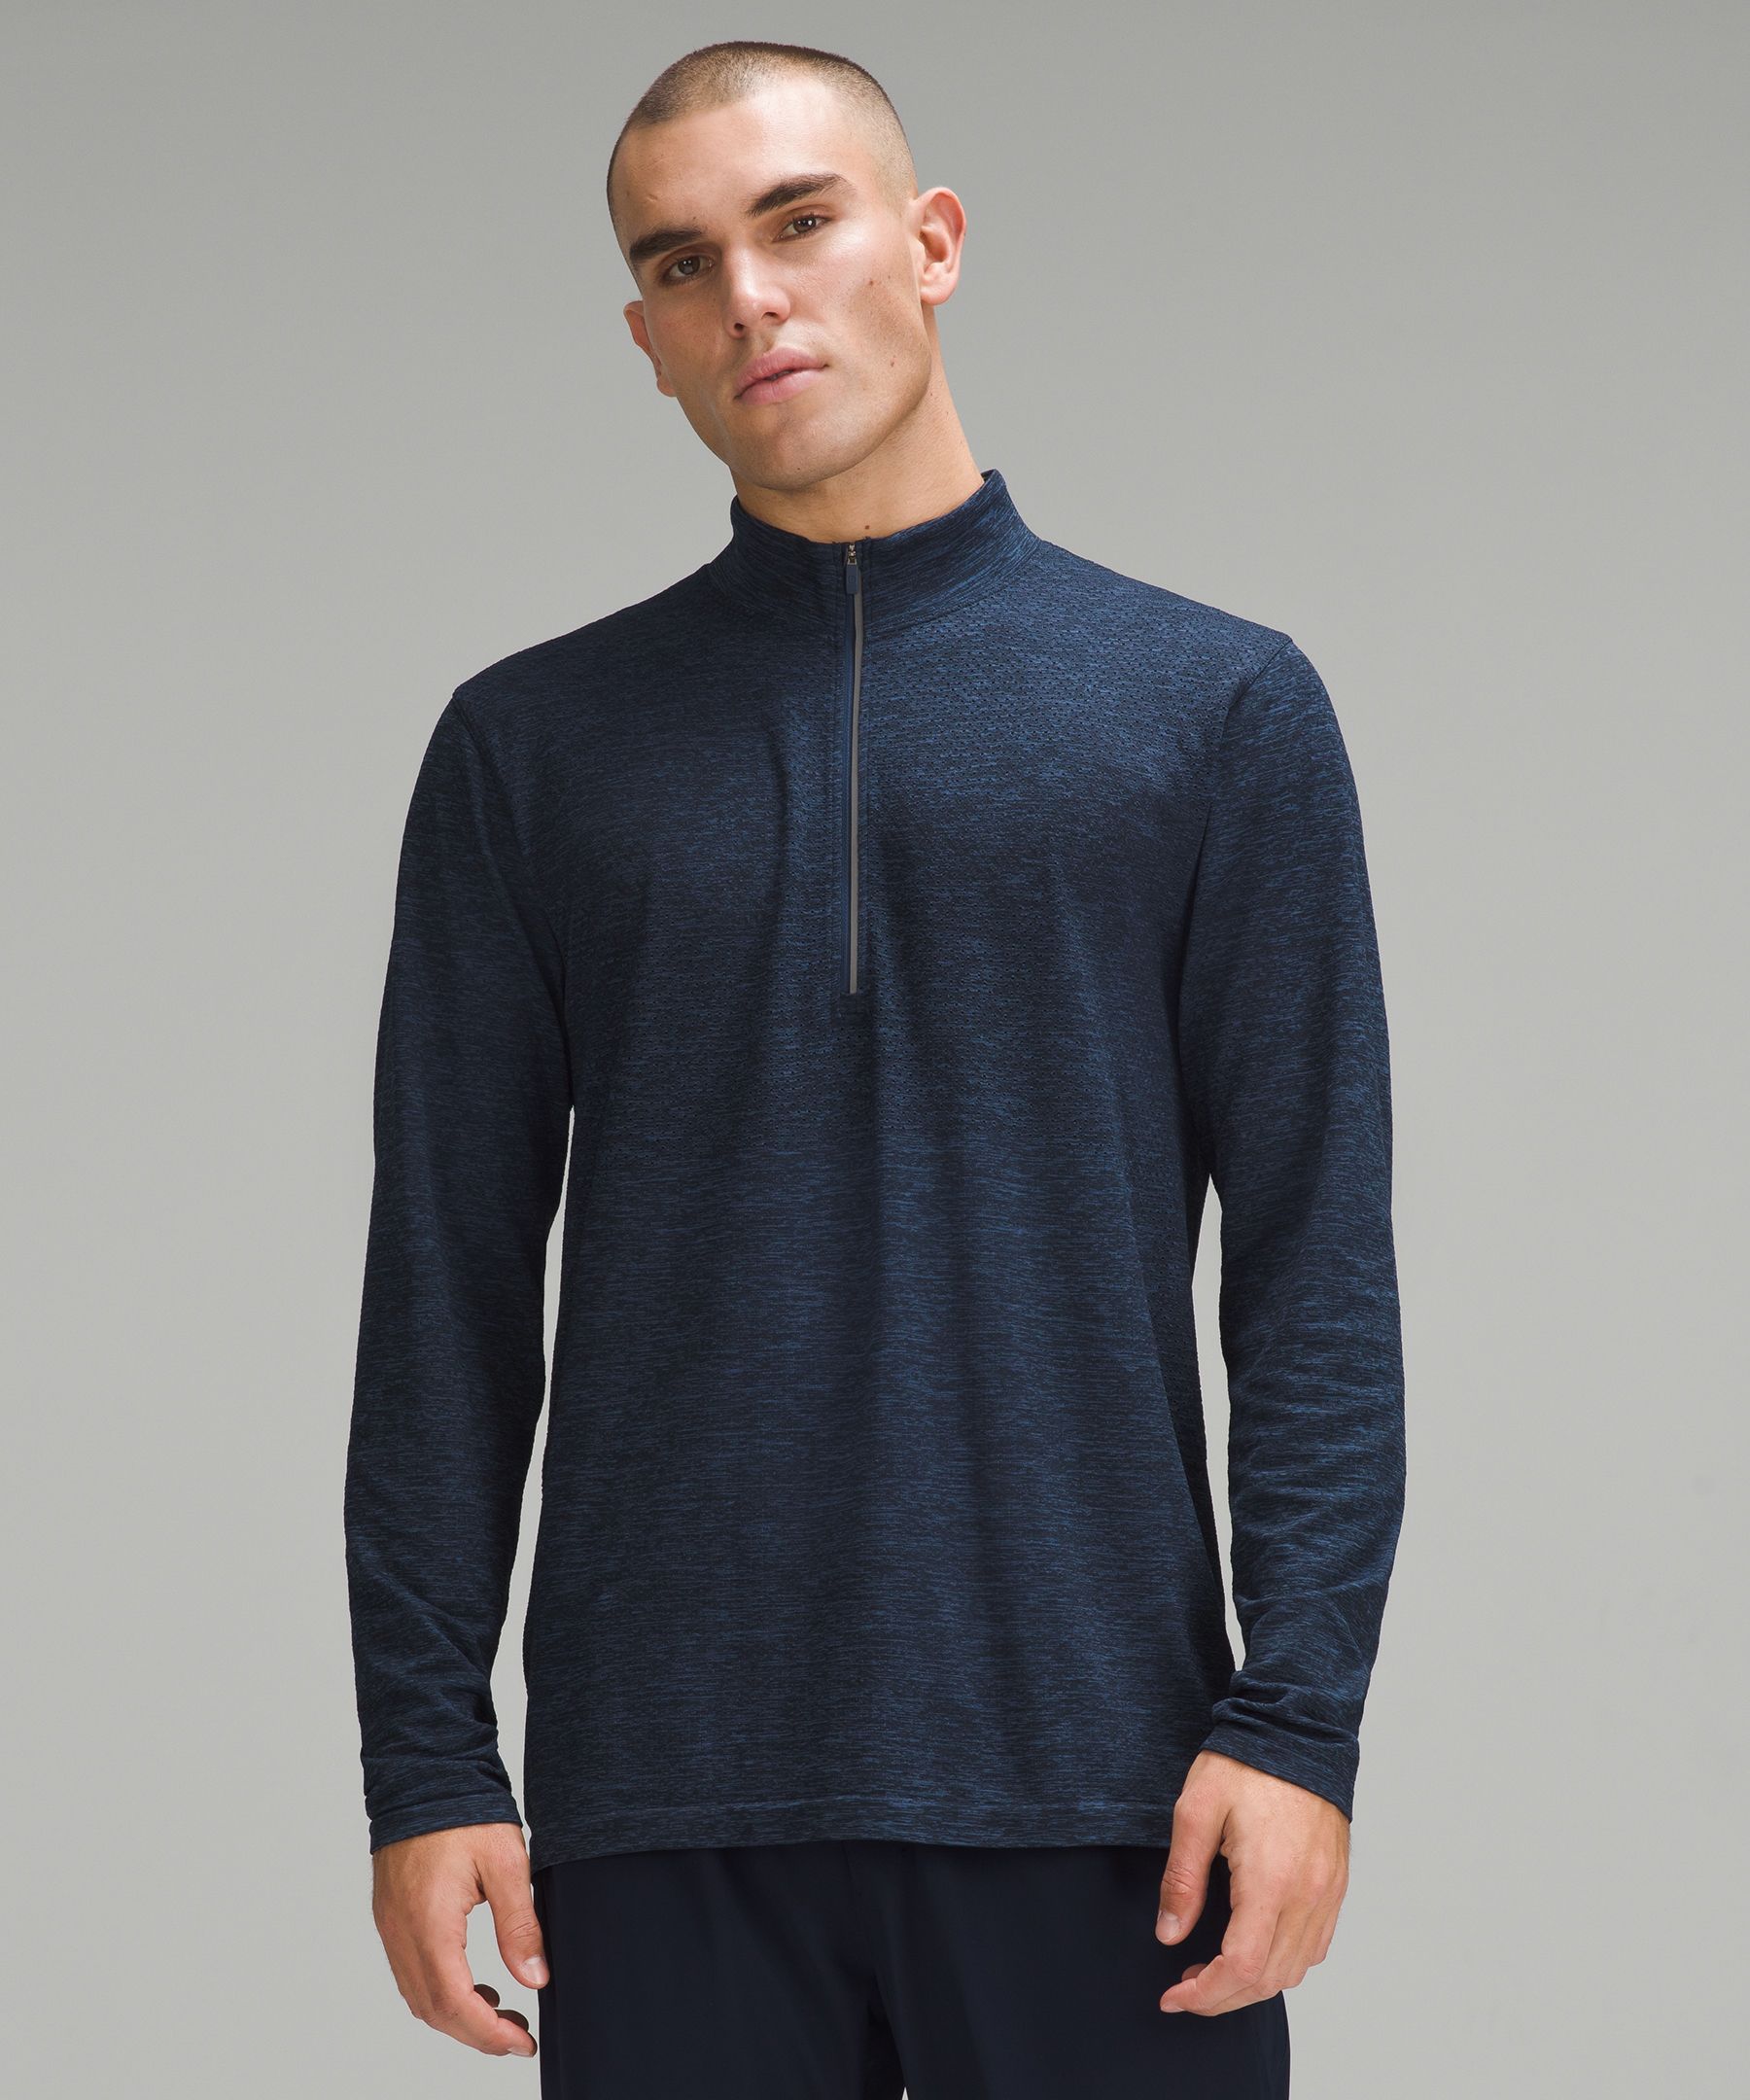 Feeling like you need a cozy hoodie today?! 🥶 - XL dark navy/gray Lululemon  sweatshirt, $20 - LARGE Adidas sweatshirt, $12 #estilomaine